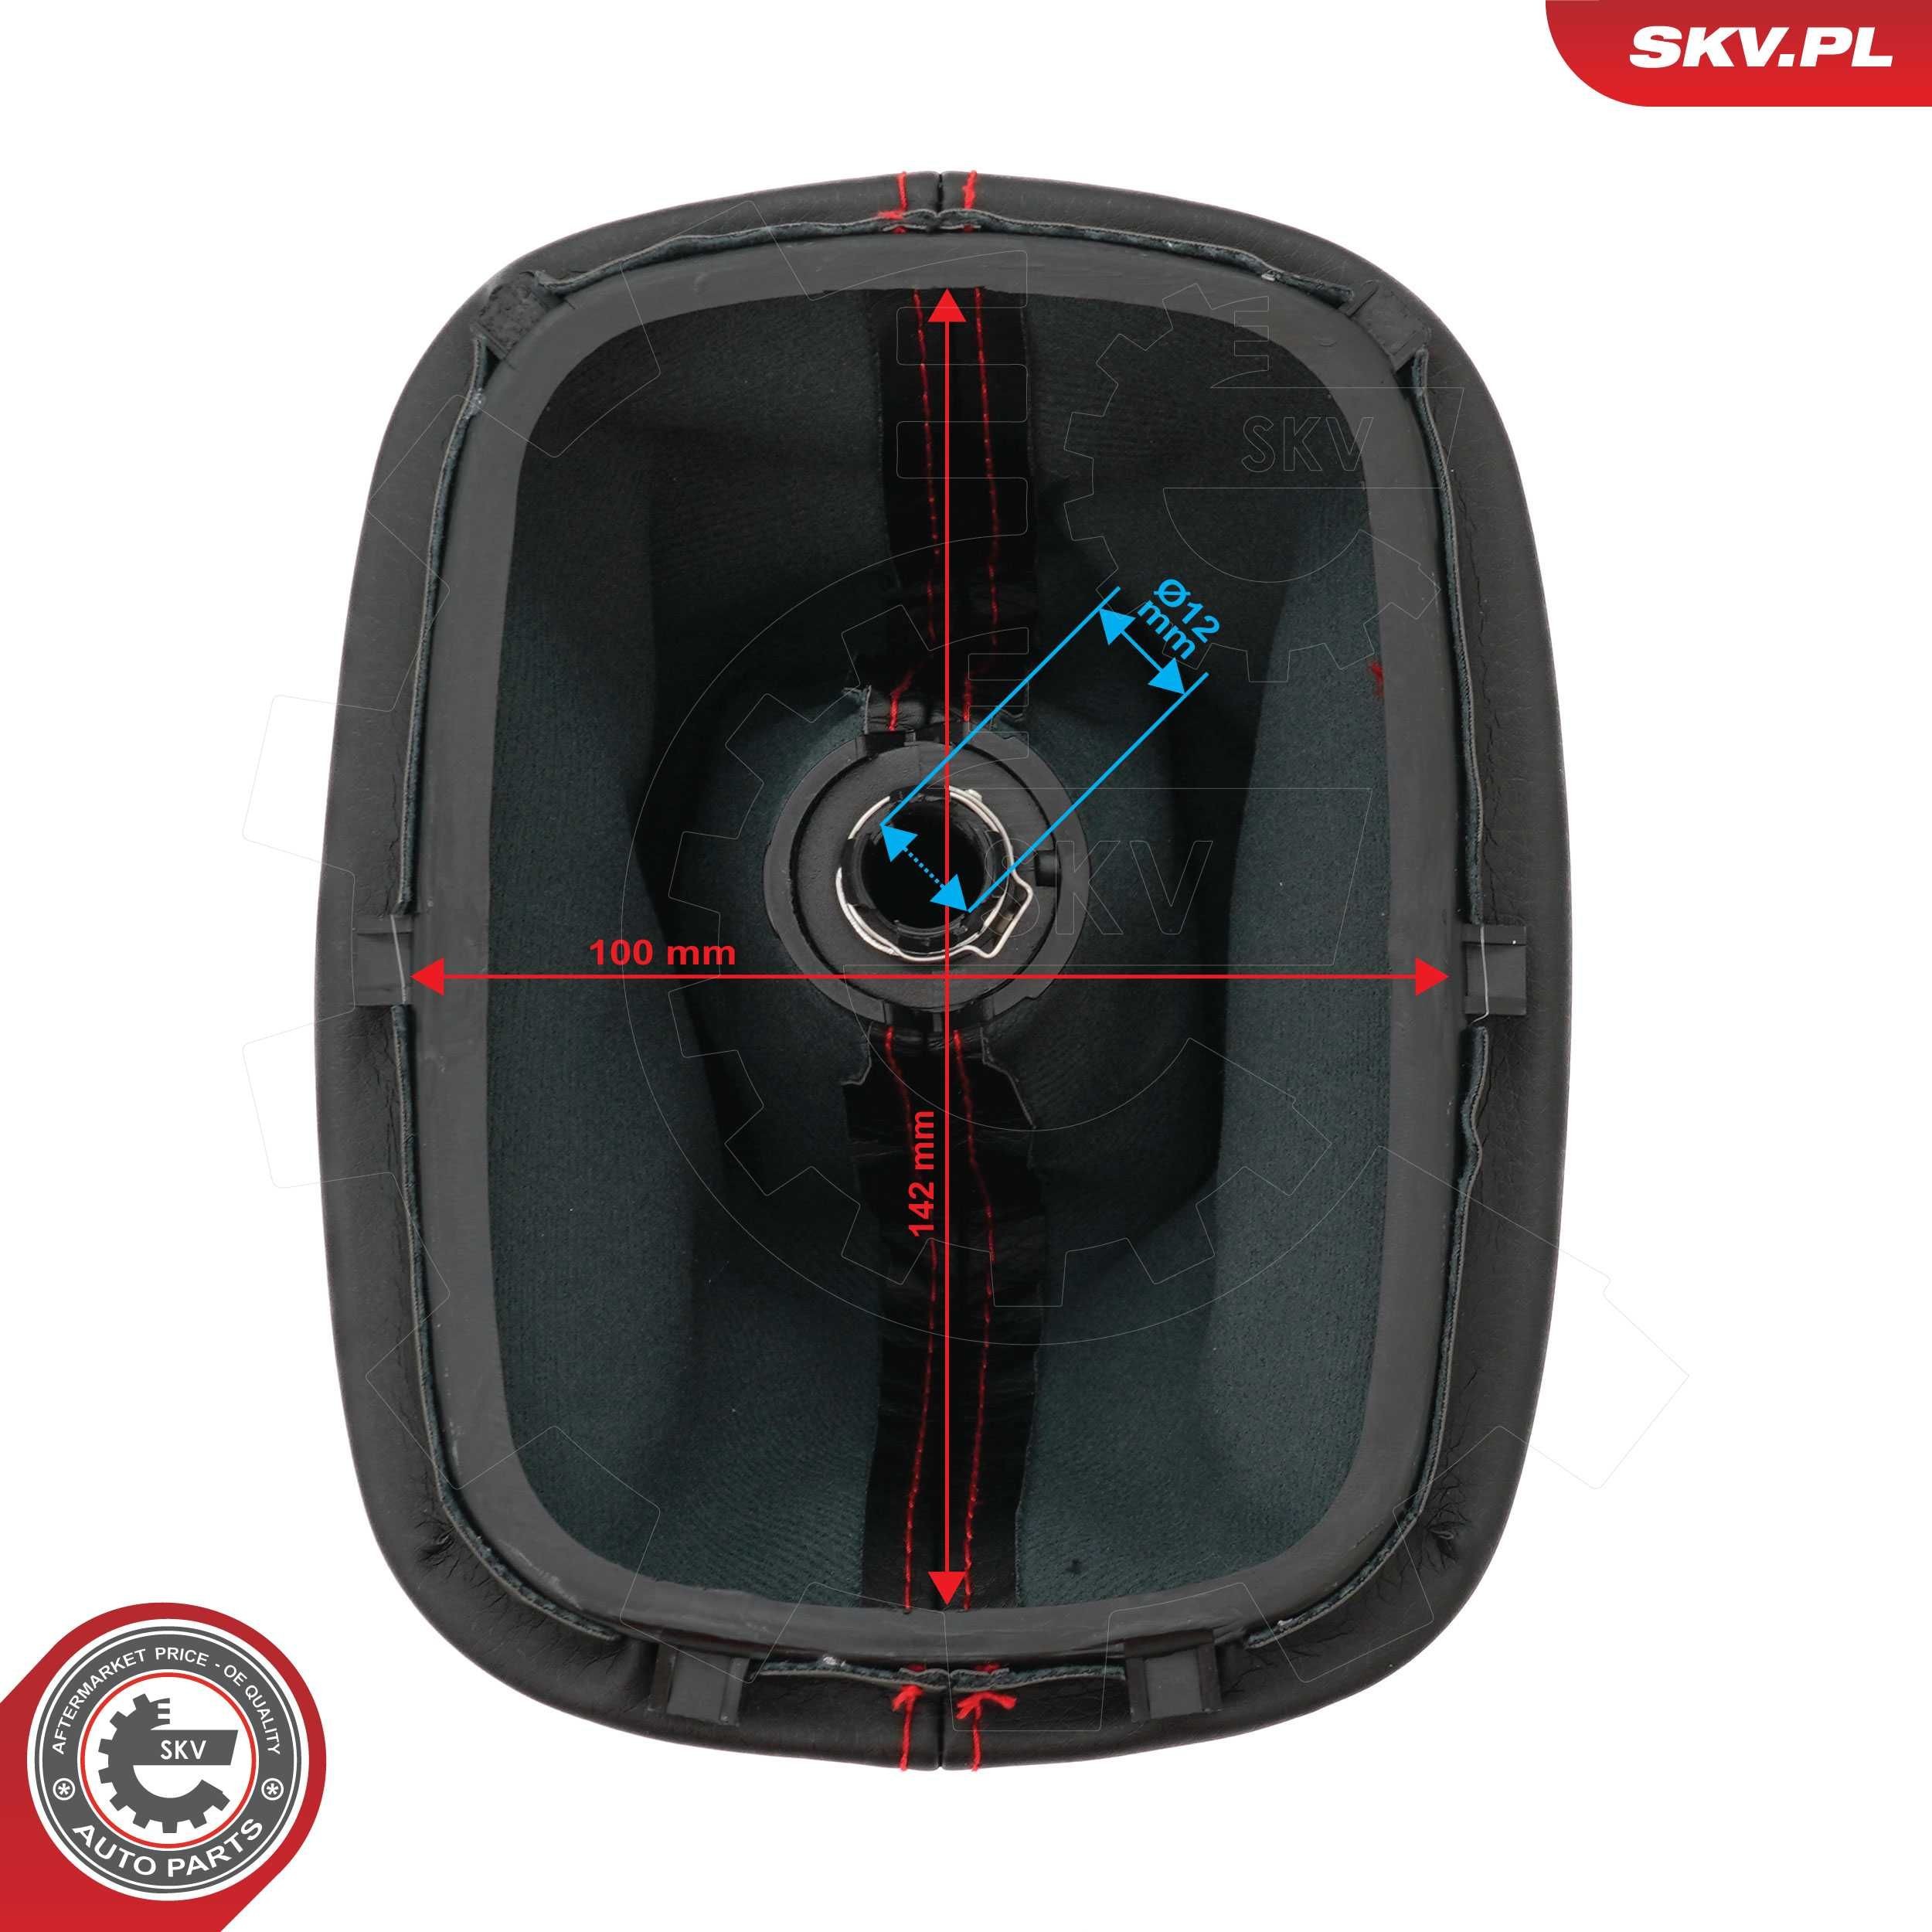 63SKV461 Gear shift knob ESEN SKV 63SKV461 review and test